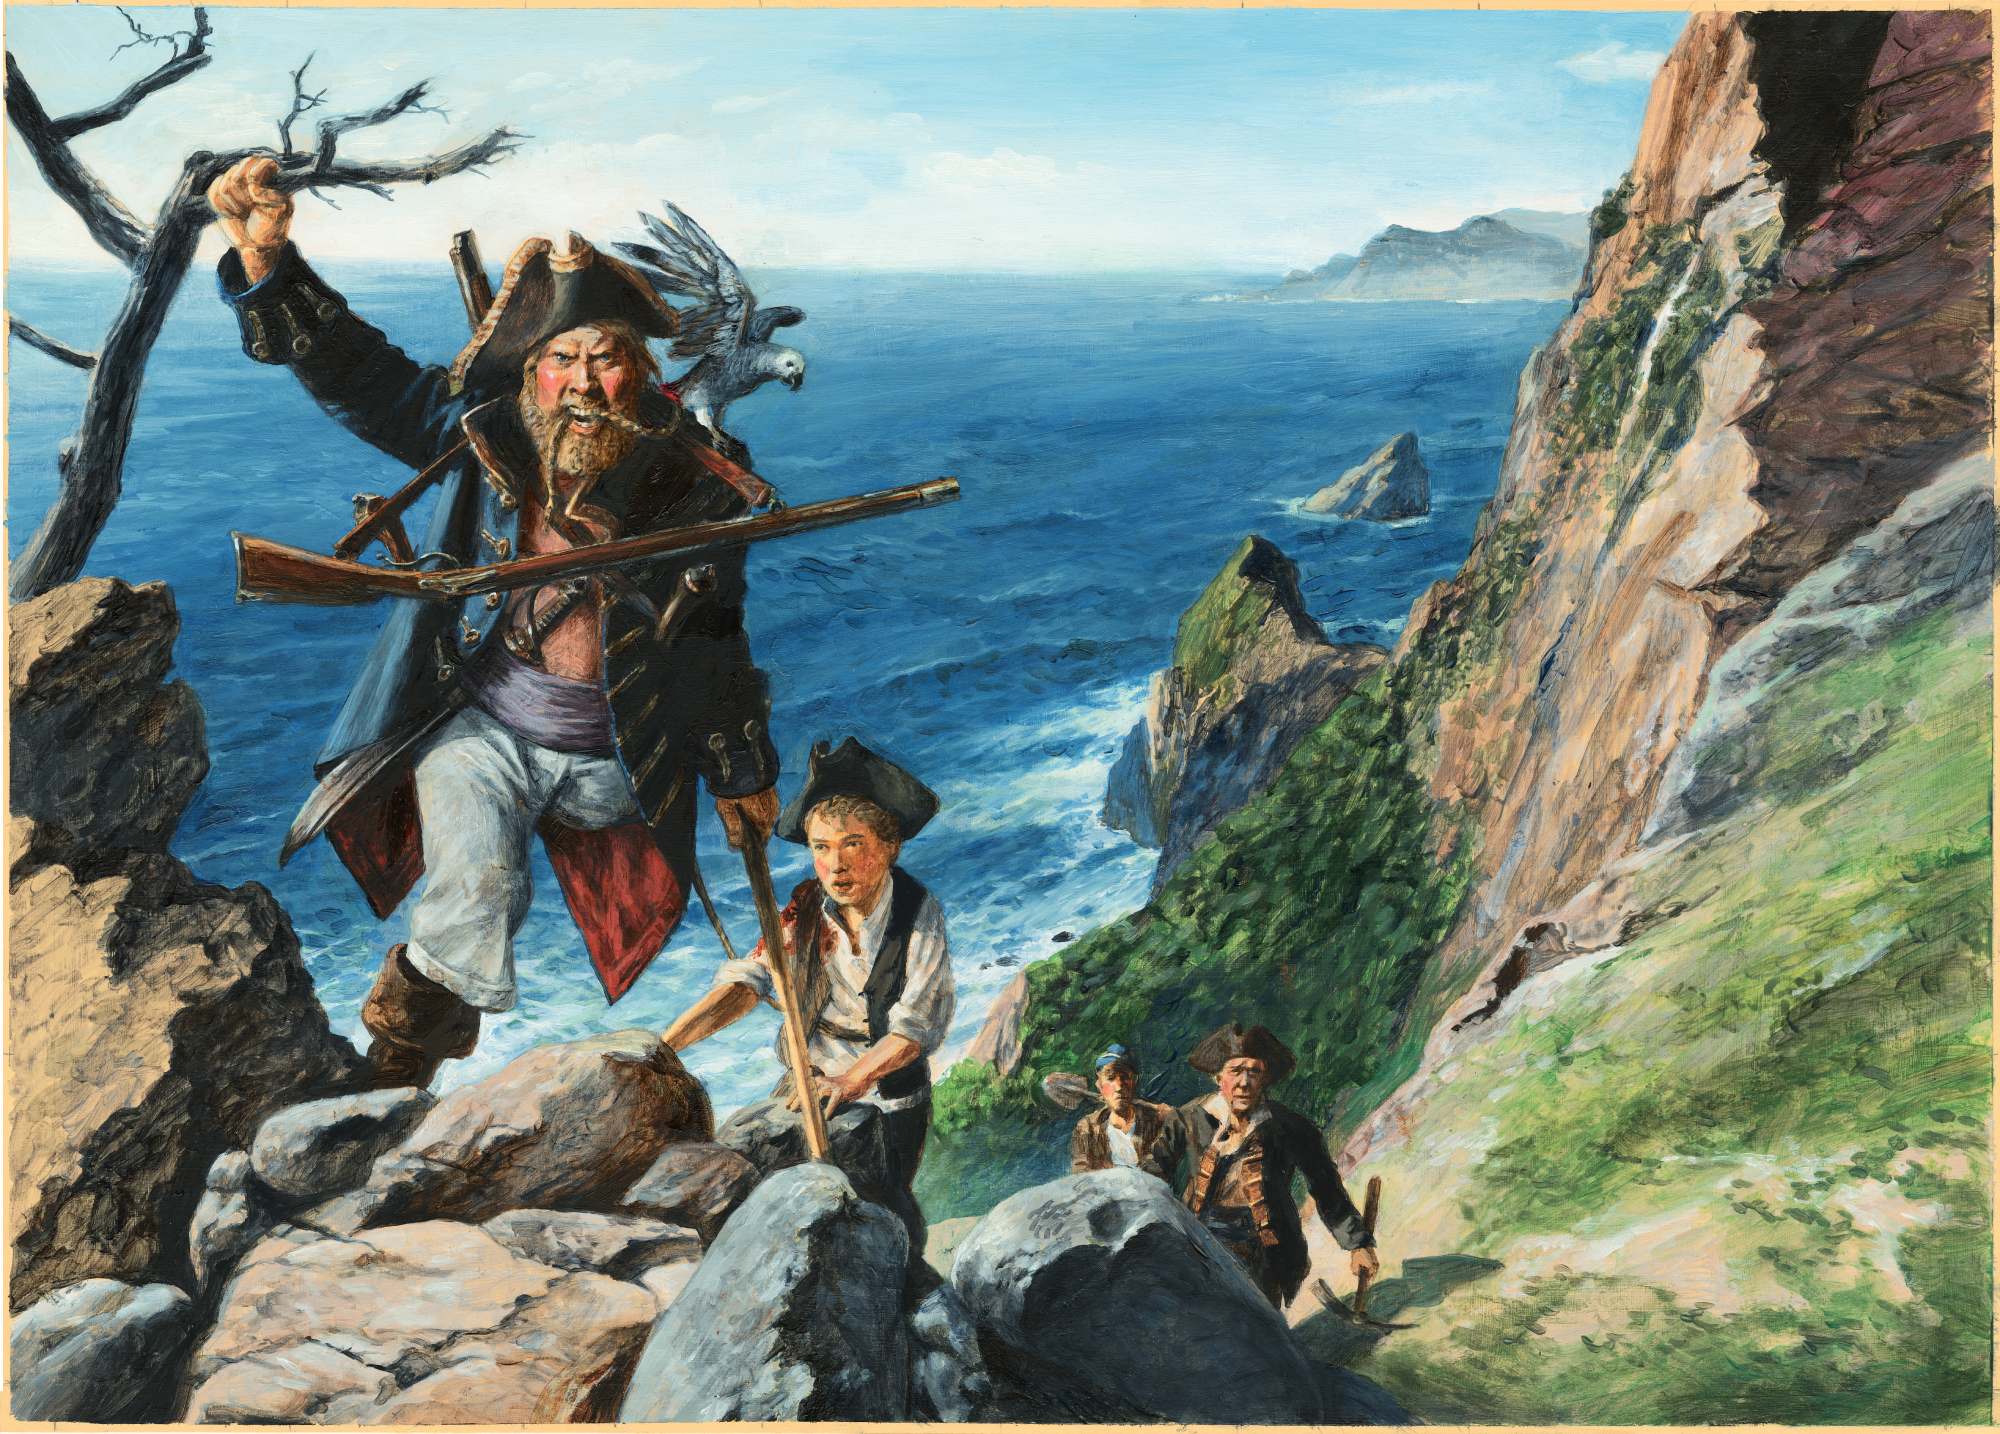 "L’isola del tesoro" di Robert Louis Stevenson, illustrazioni di Maurizio Quarello (Orecchio Acerbo)